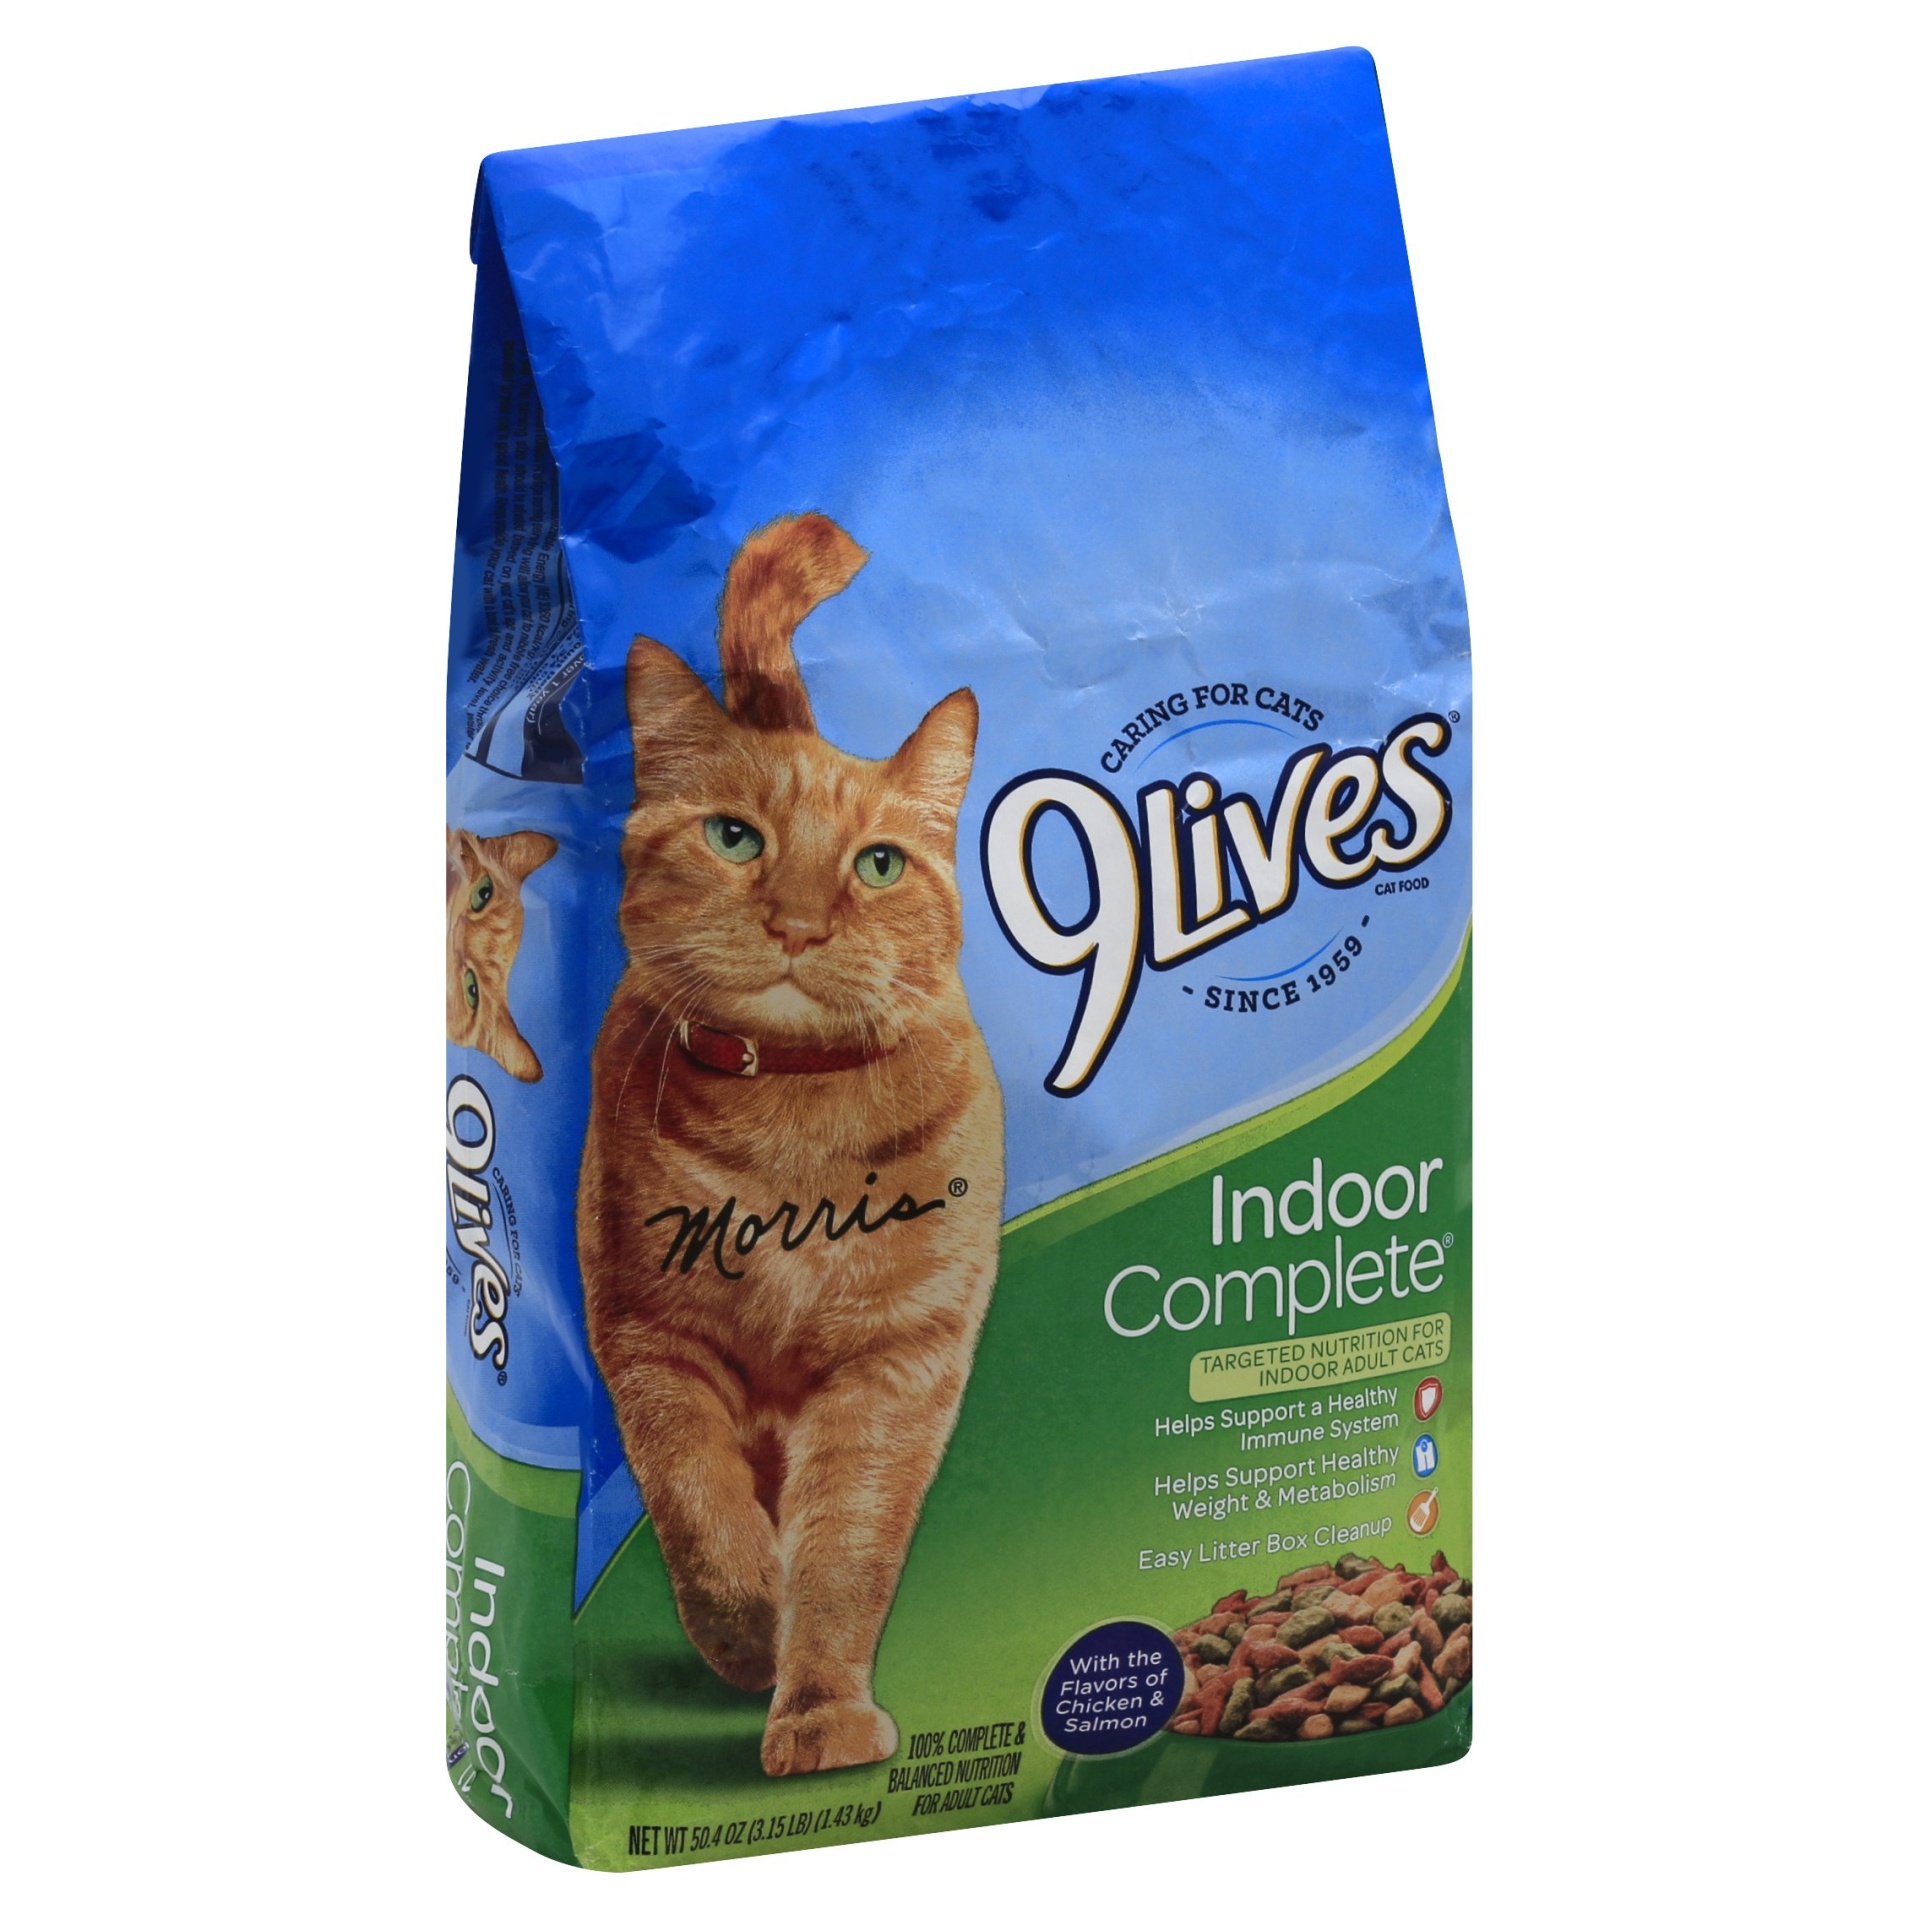 slide 1 of 1, 9Lives Indoor Complete Cat Food, 3.15 lb